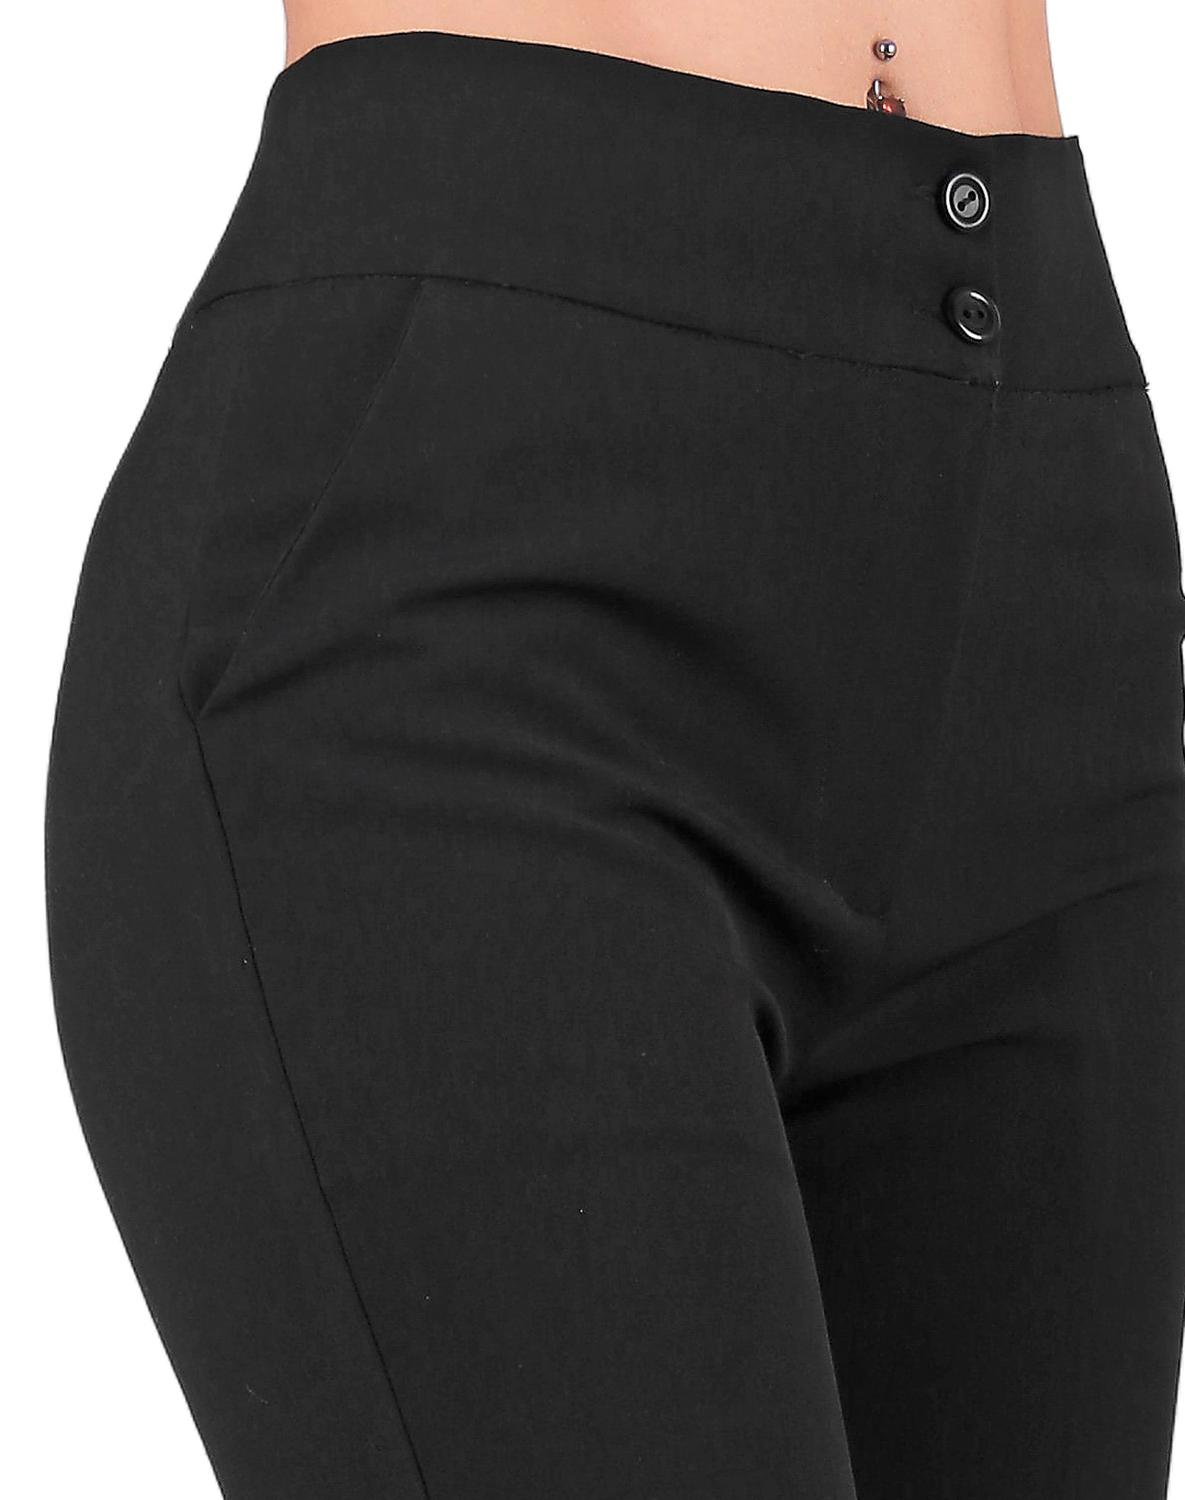 Pantalón Vestir Mujer Stfashion Negro 79304069 Spandex